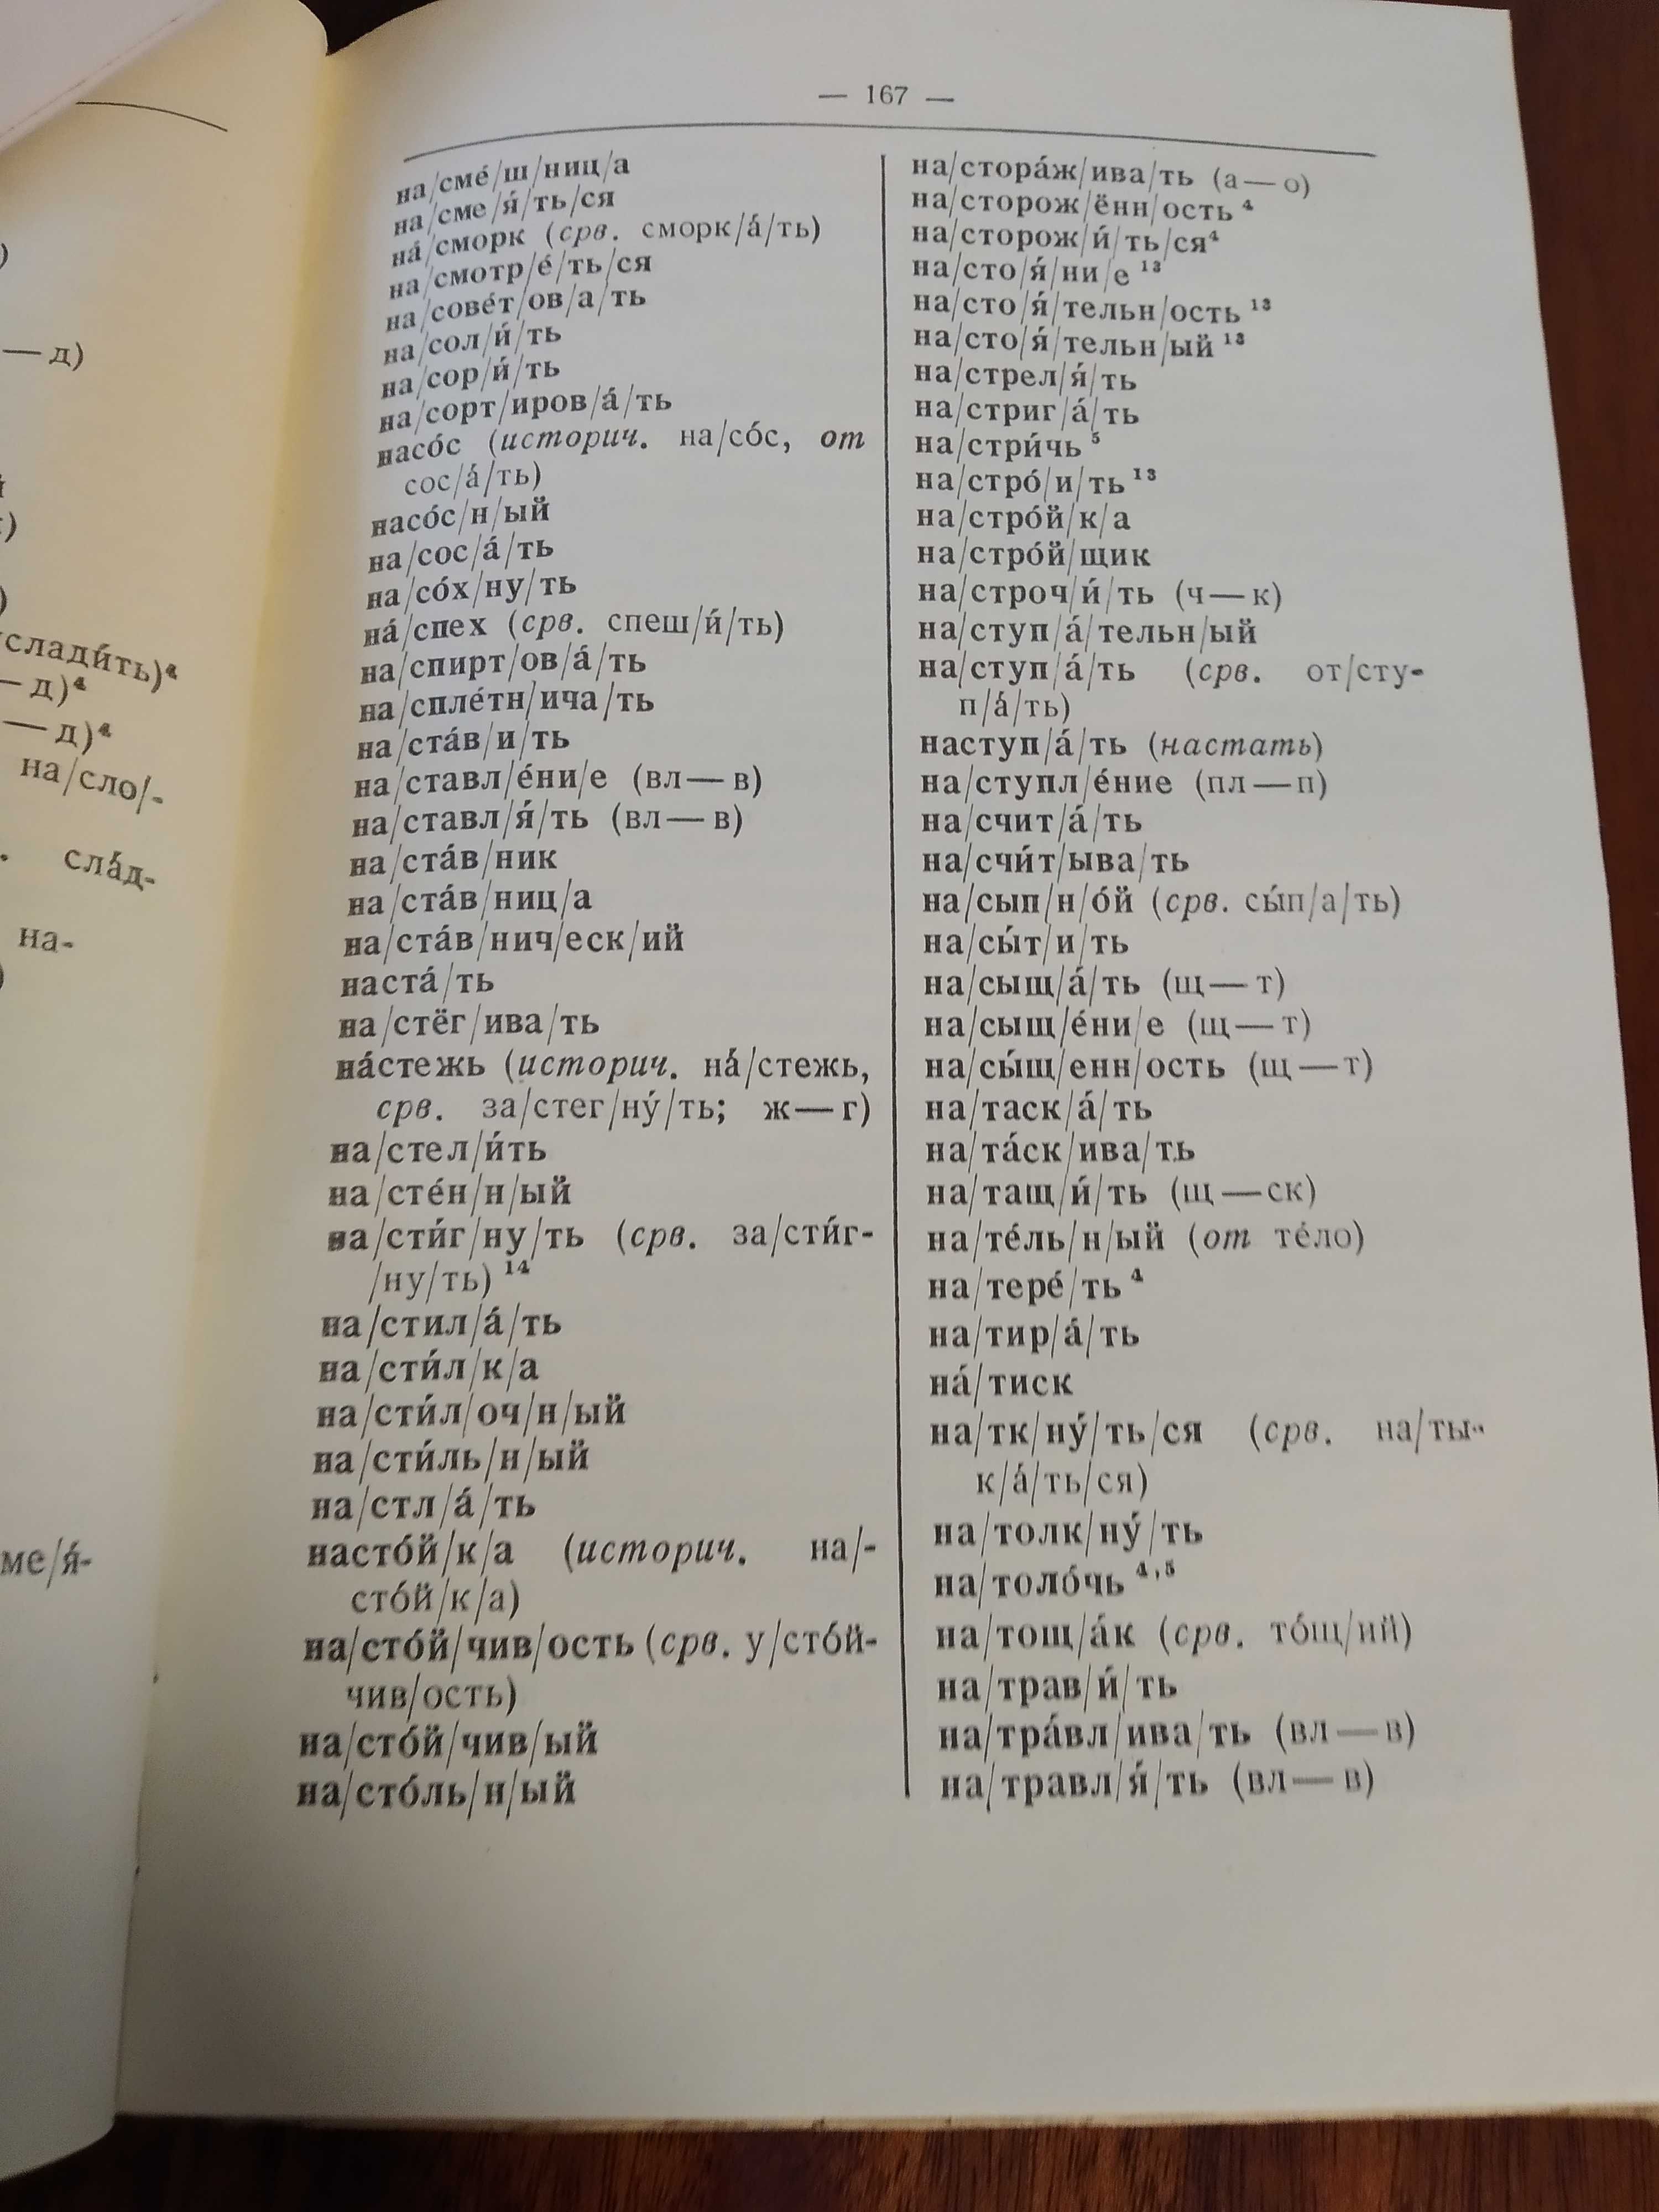 Школьный словообразовательный словарь